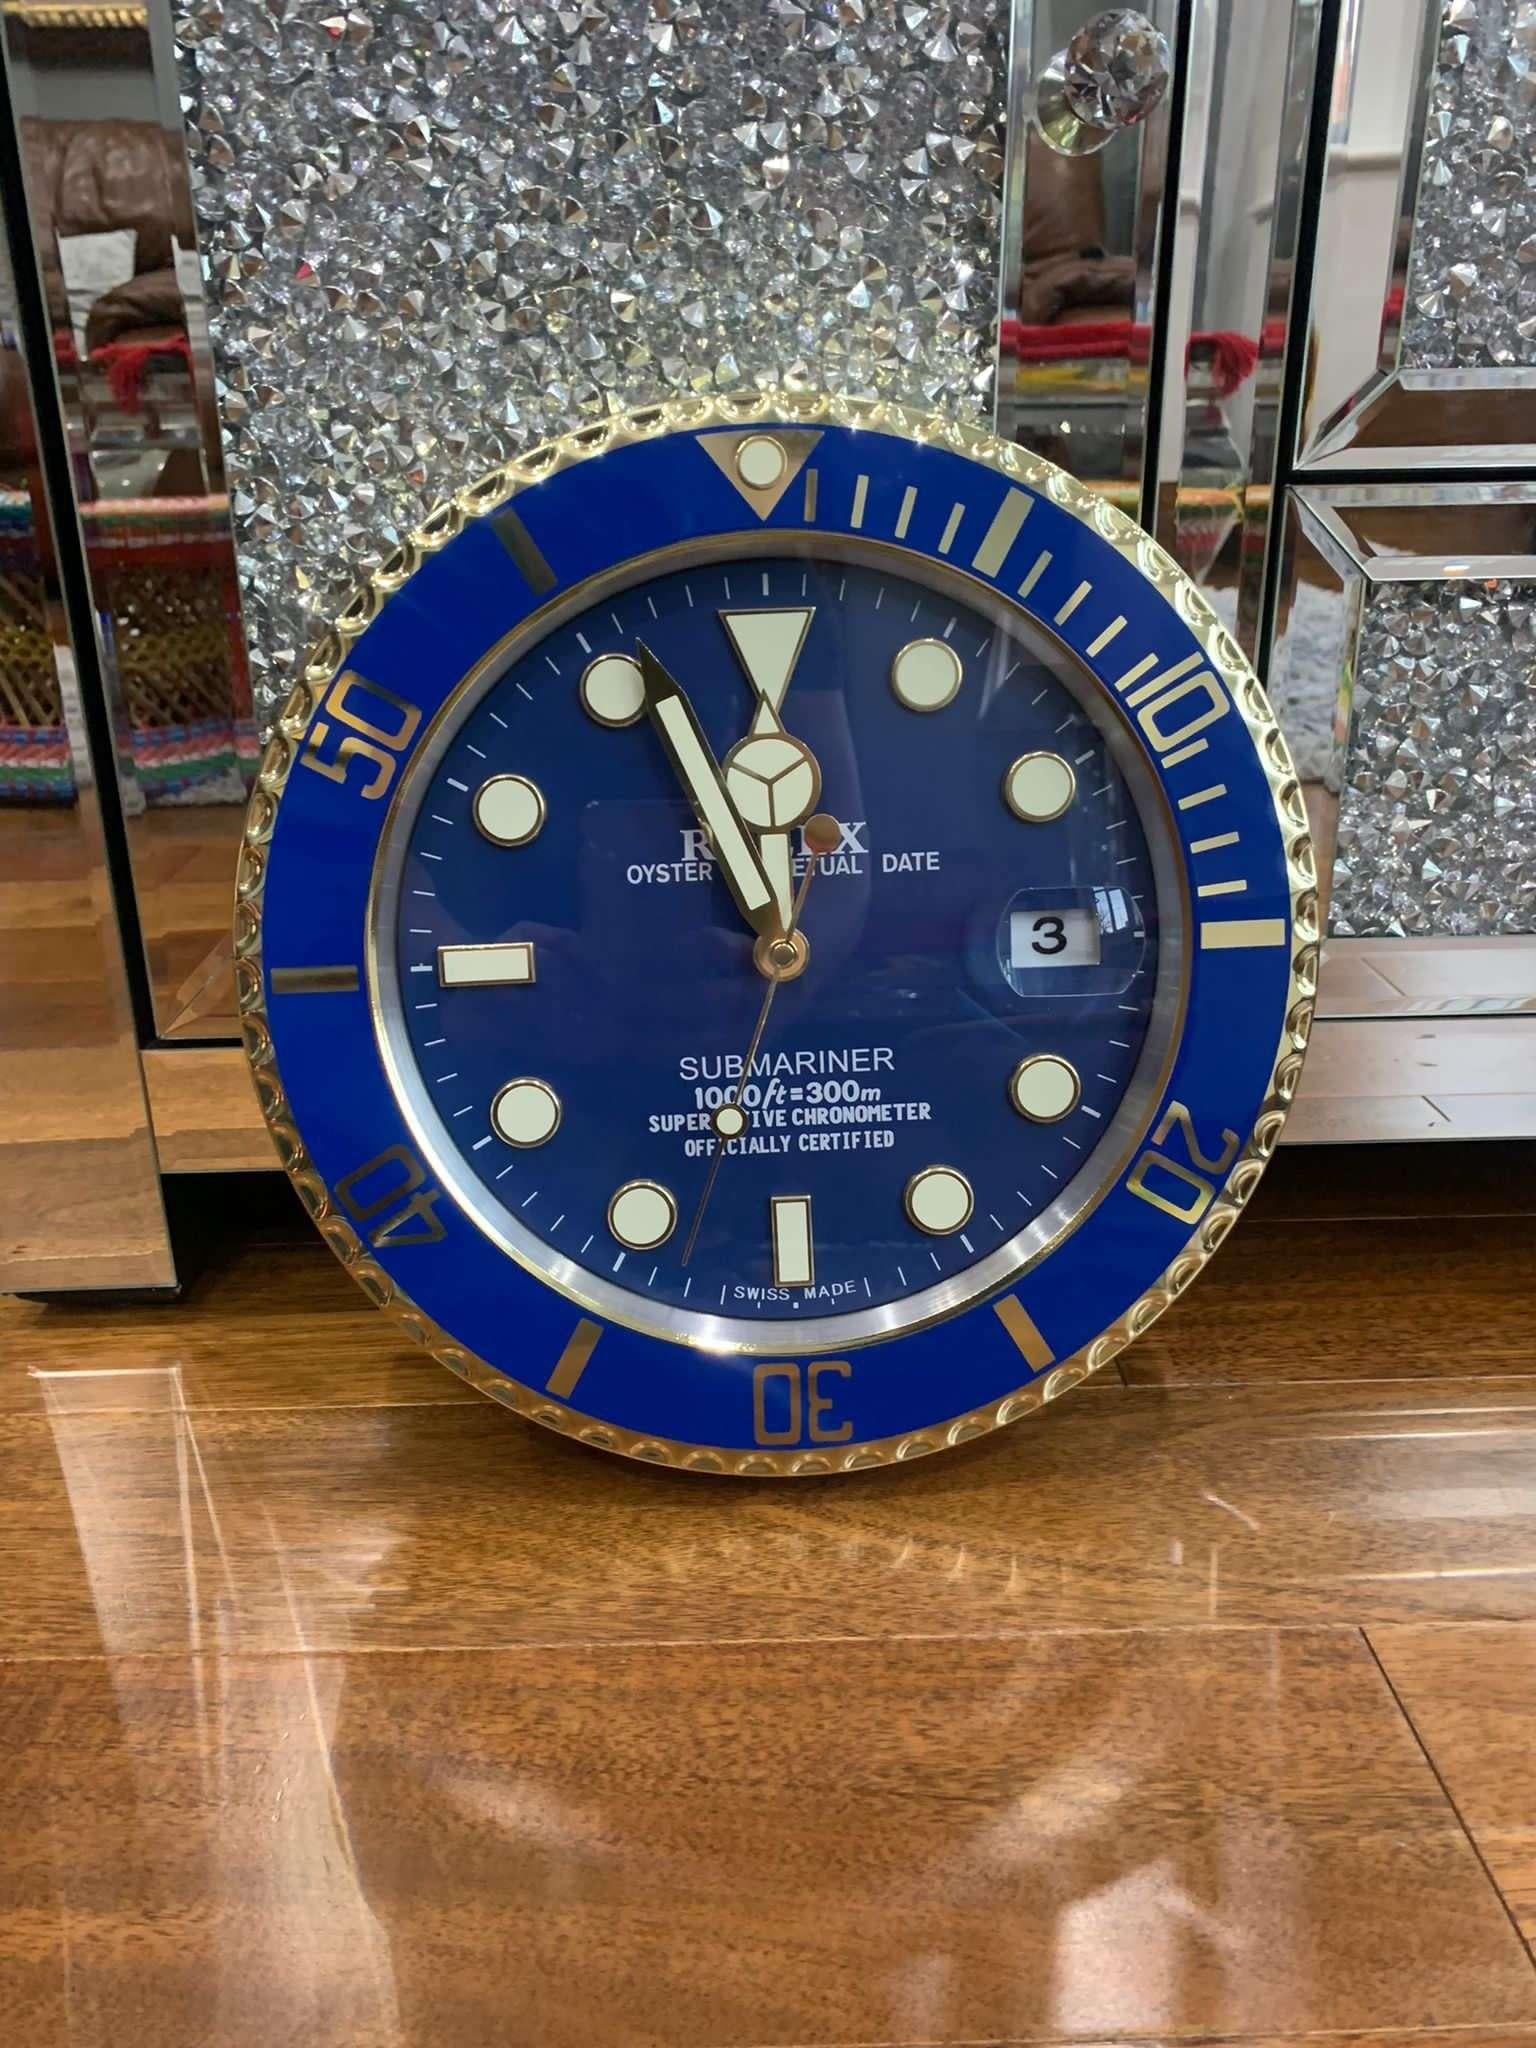 Horloge murale Oyster Perpetual Submariner bleu et or officiellement certifiée par ROLEX. Avec aiguilles lumineuses, aiguilles à balayage.
Expédition internationale gratuite.